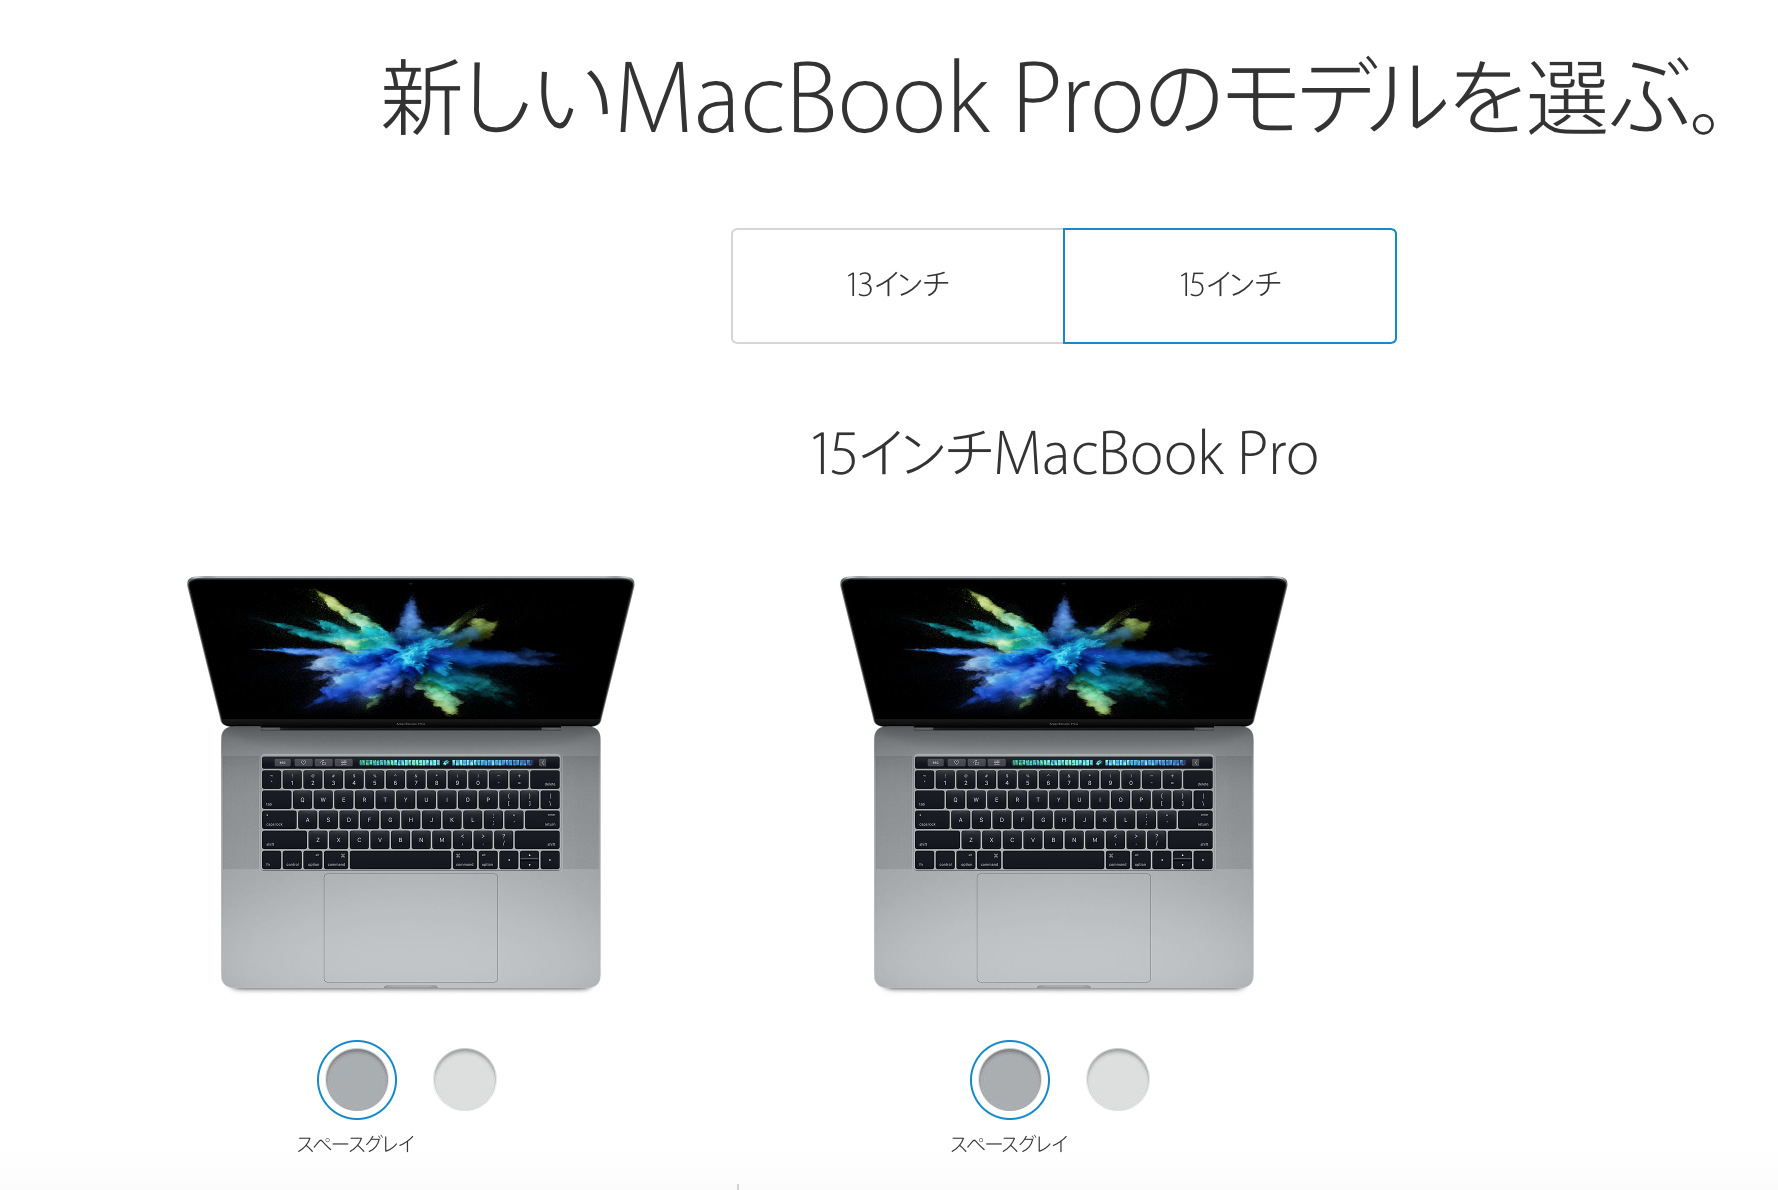 MacBook Pro 15インチをCTOした僕のカスタマイズの選び方。